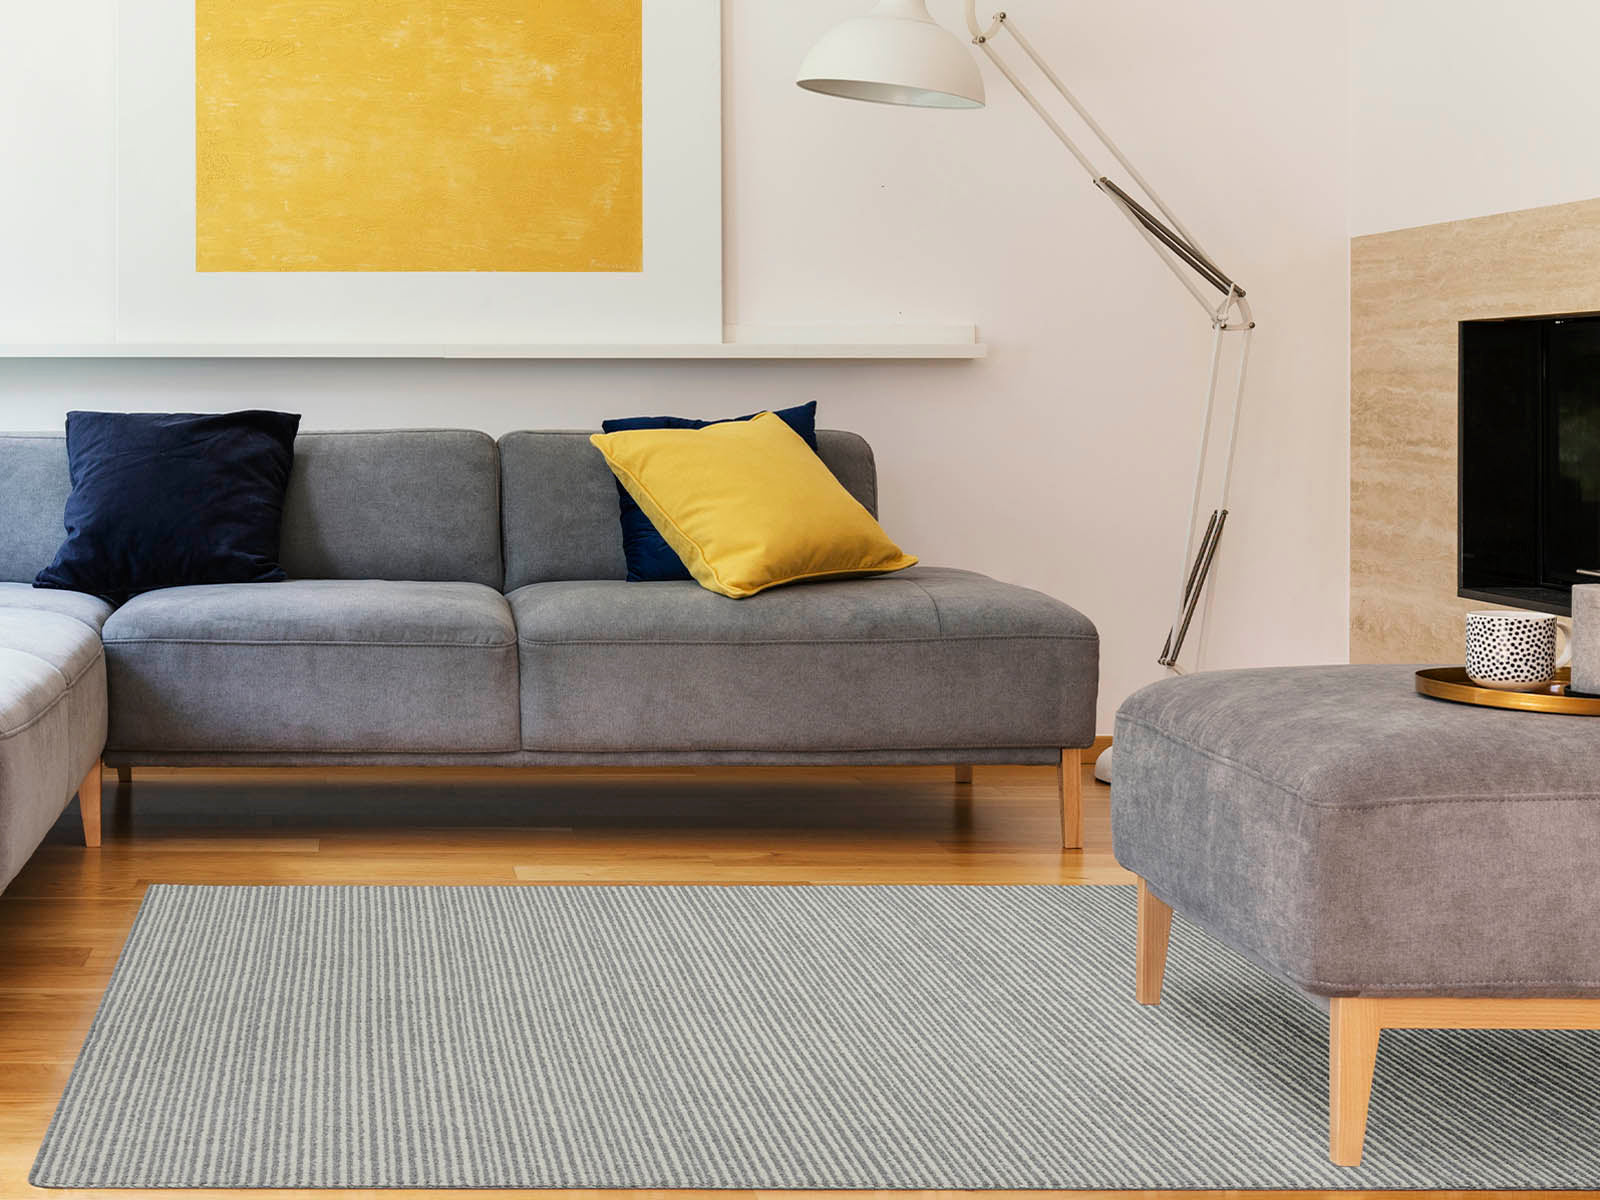 Cómo elegir la alfombra de exterior ideal para tu hogar? - Colineal